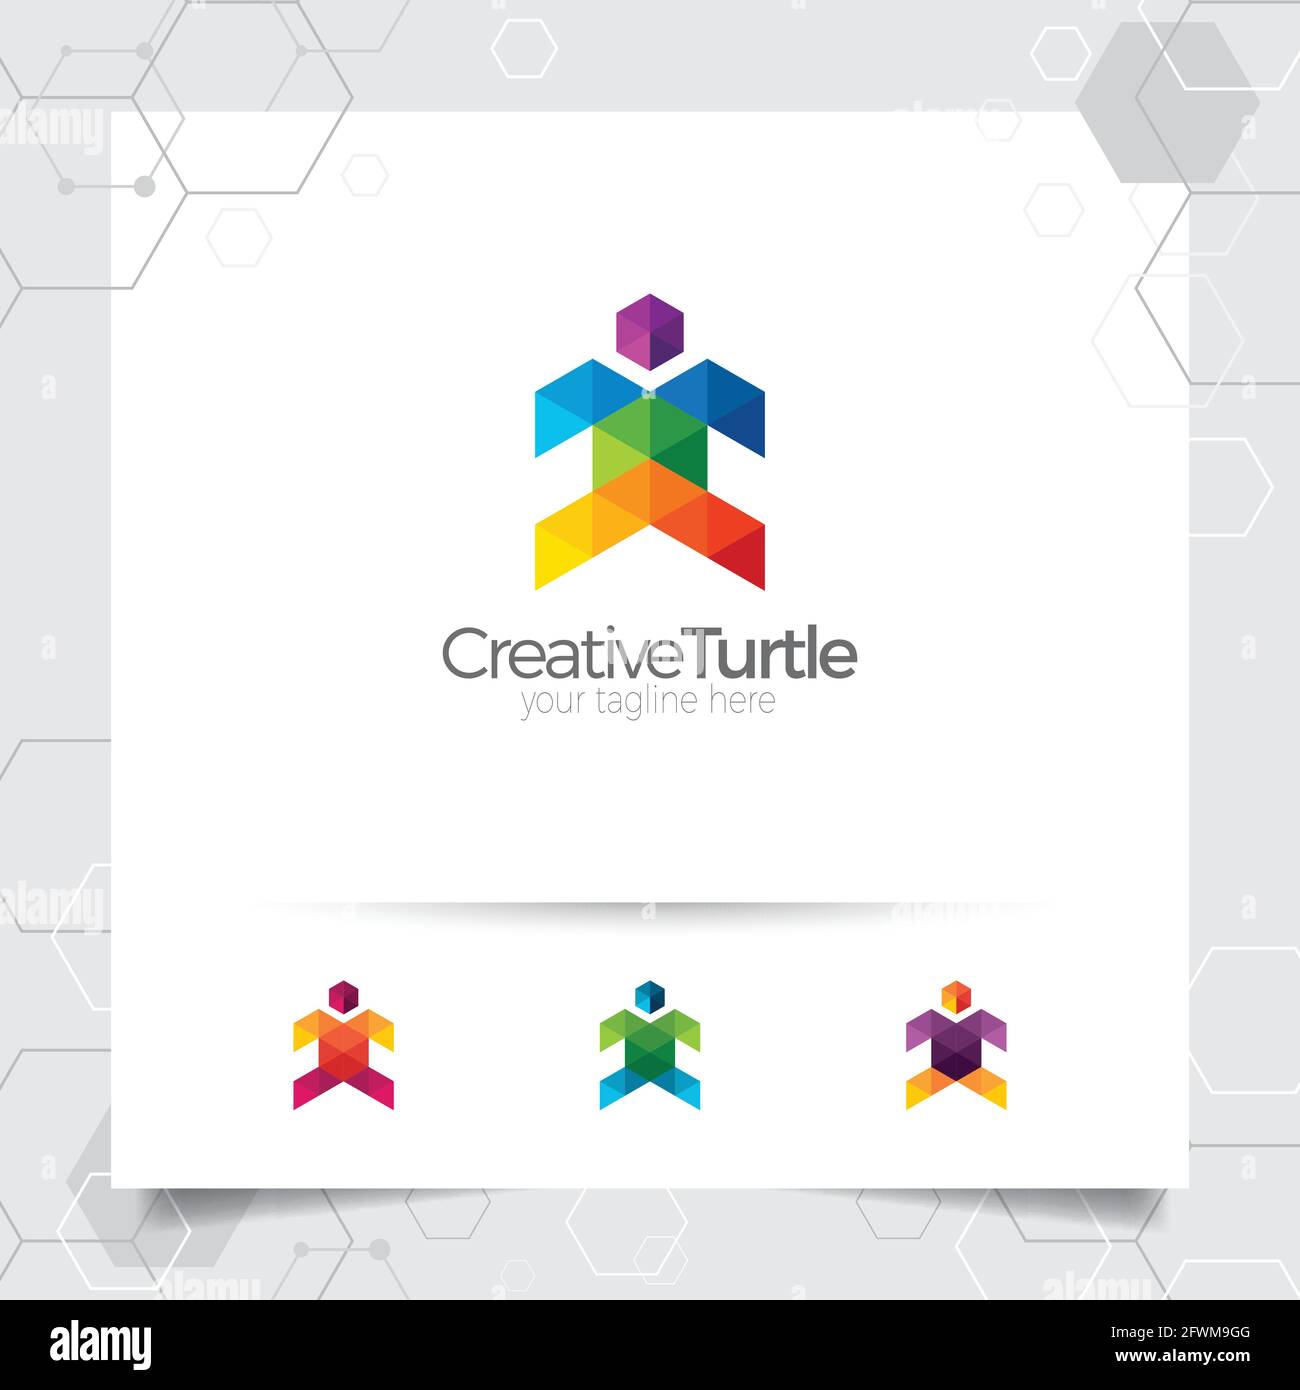 Schildkröte Vektor-Design-Illustration mit bunten Dreieck und Pixel-Konzept. Turtle Logo-Vektor für App, Business und Studio. Stock Vektor